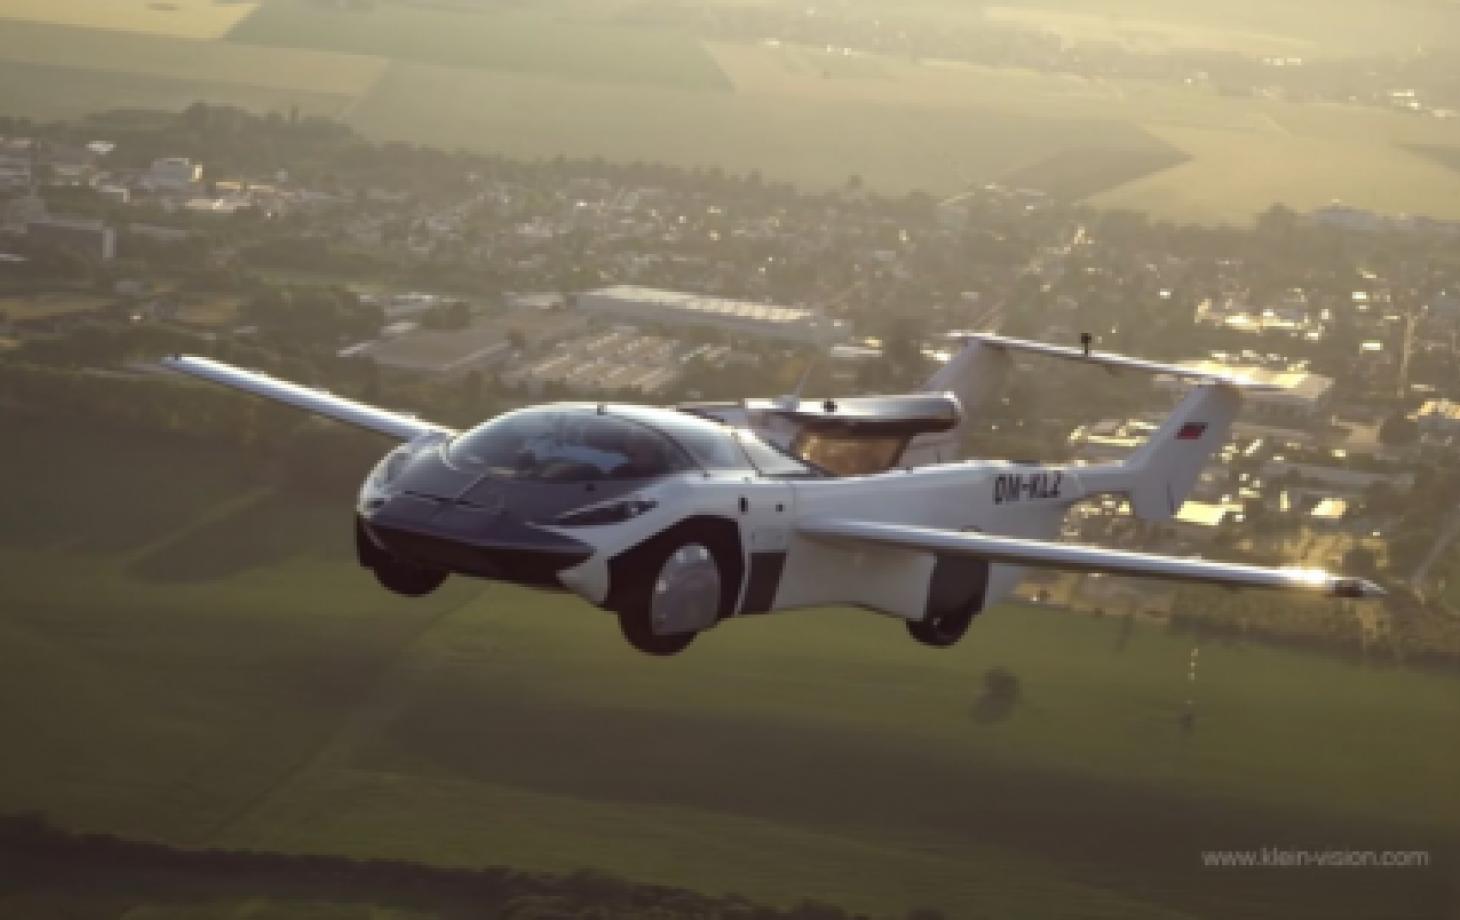 O coche voador xa realizou o seu primeiro voo interurbano en Eslovaquia